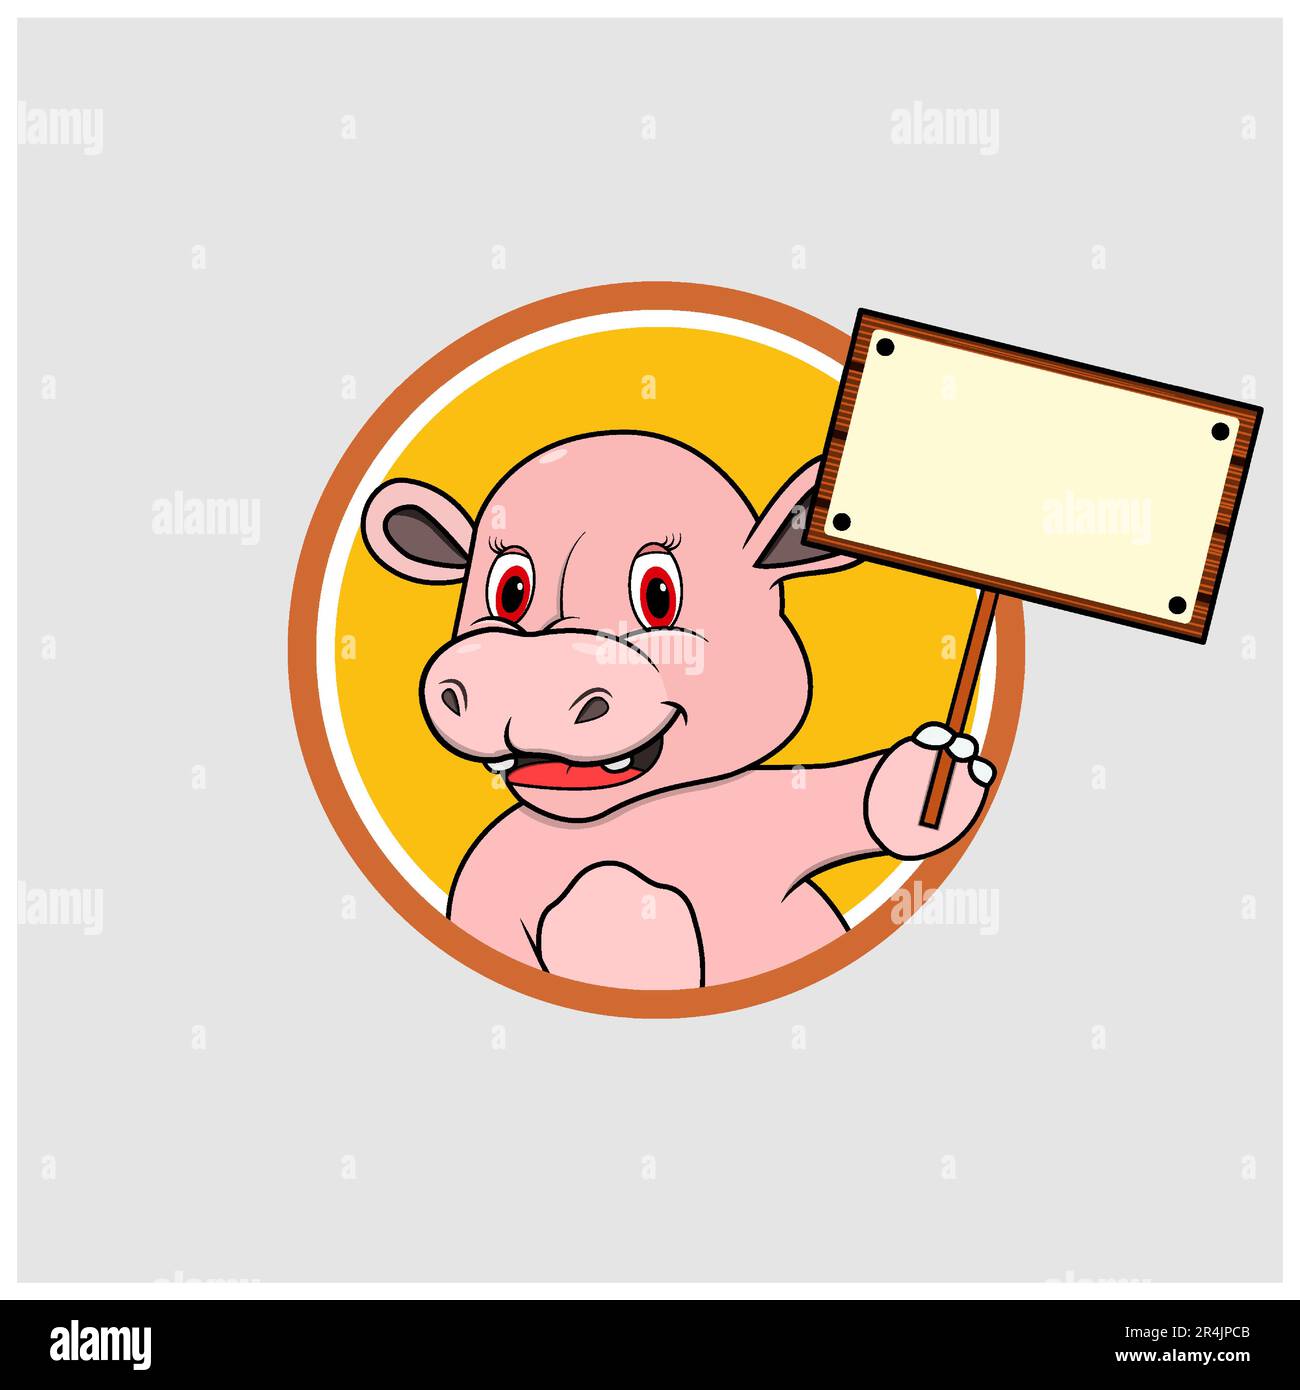 Étiquette de cercle de tête d'hippopotame avec panneau de bois vierge, fond de couleur jaune, mascotte, icône, personnage ou logo, Vecteur et illustration. Illustration de Vecteur